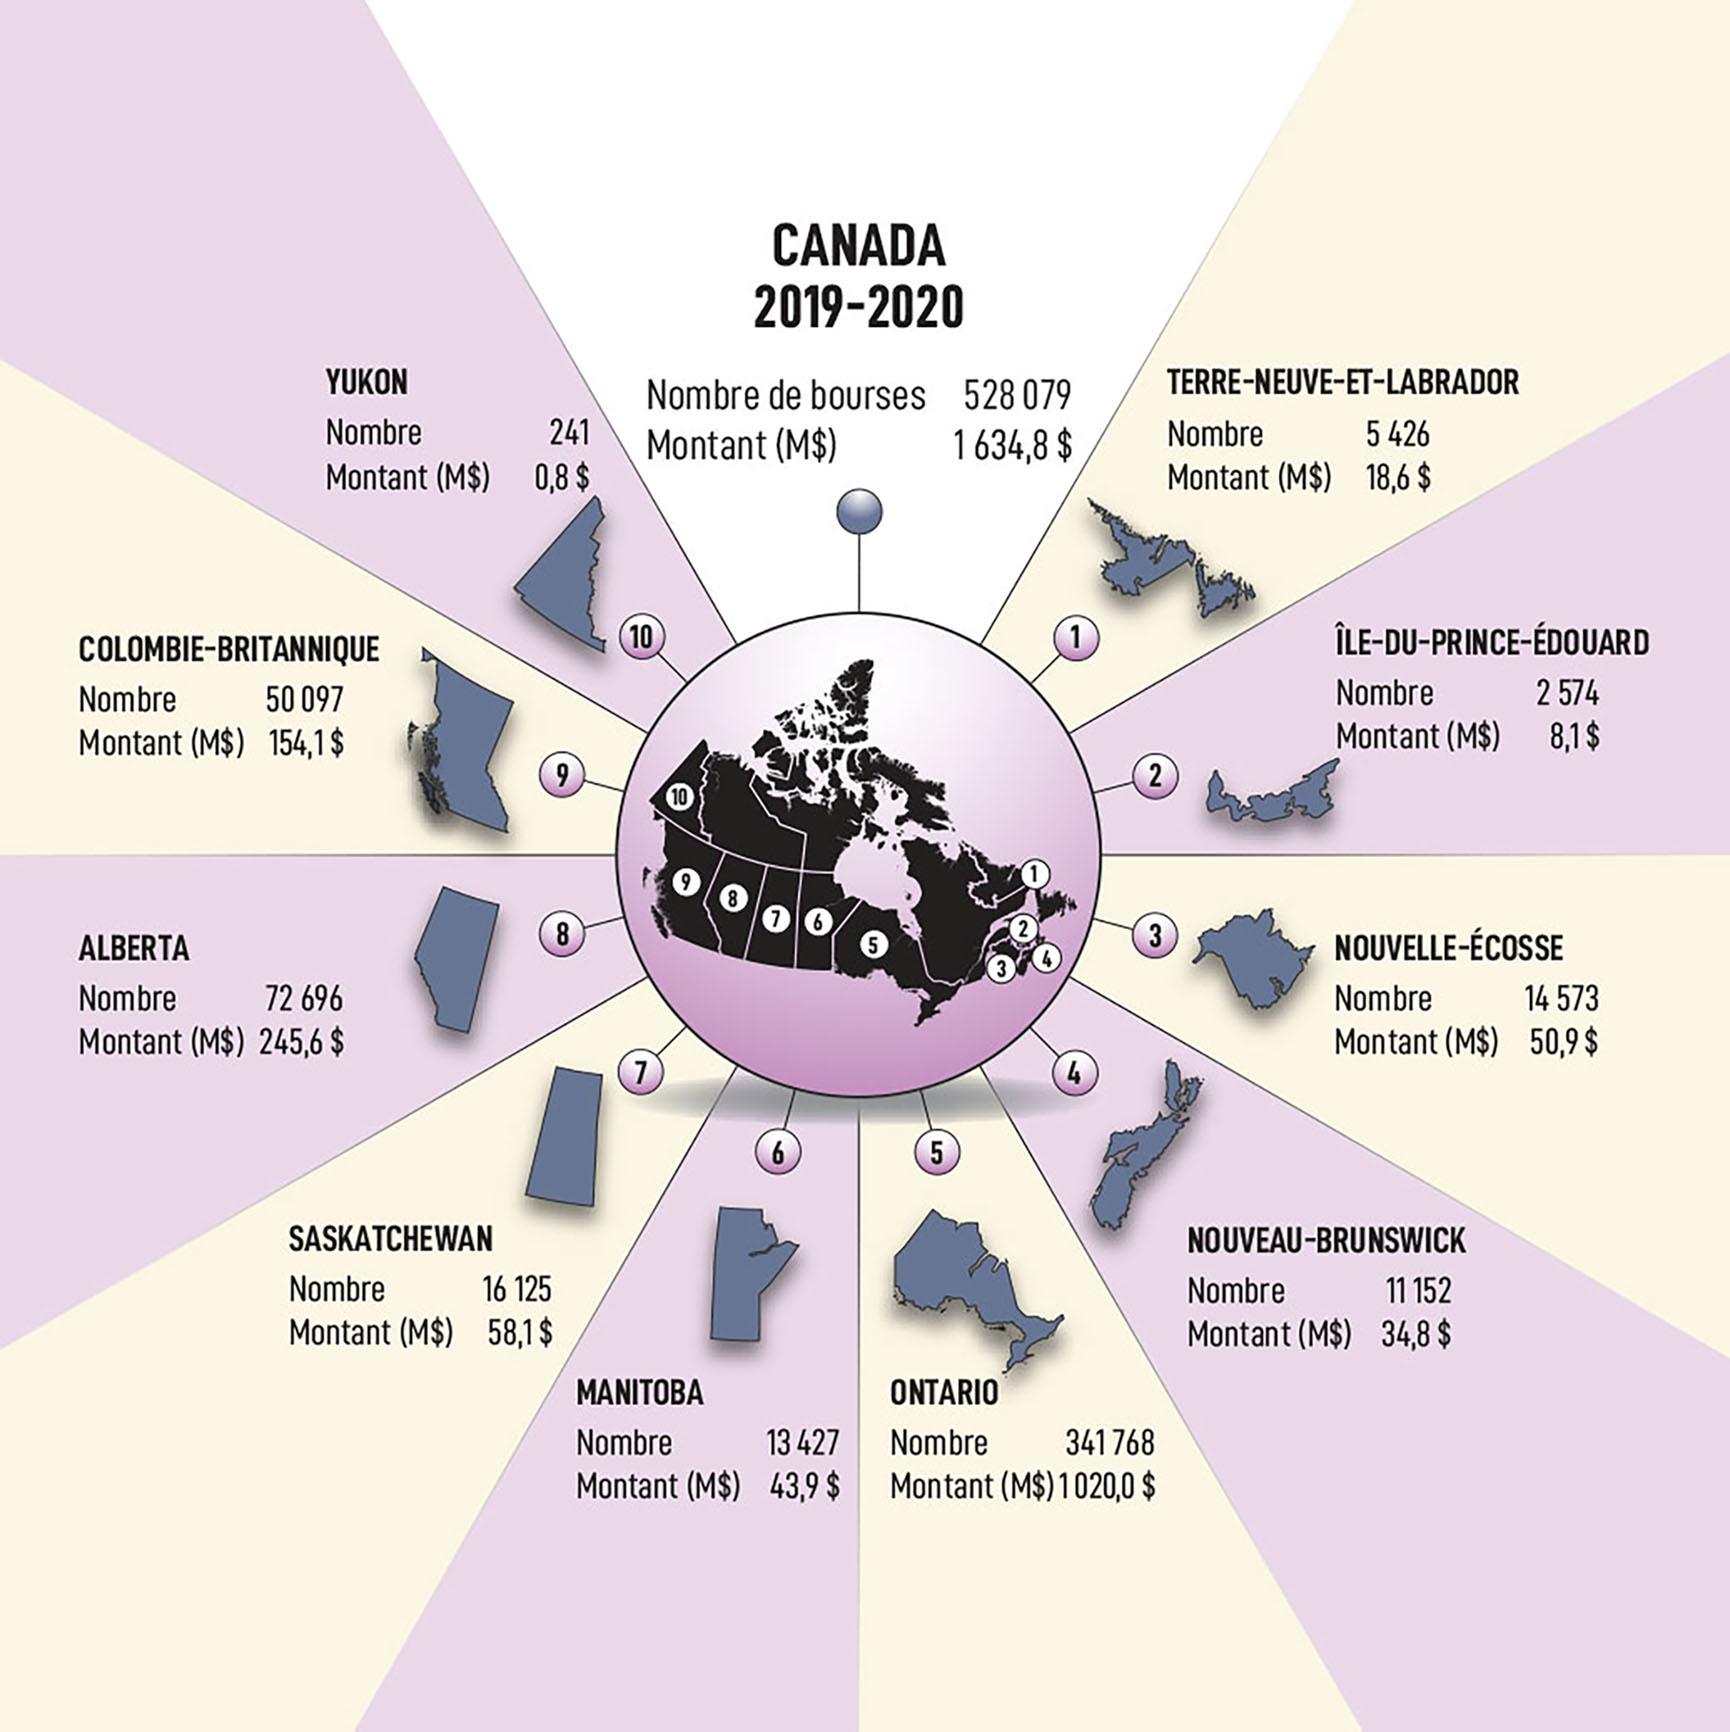 Bourses d'études canadiennes pour les étudiants à temps plein et à temps partiel de 2019 à 2020